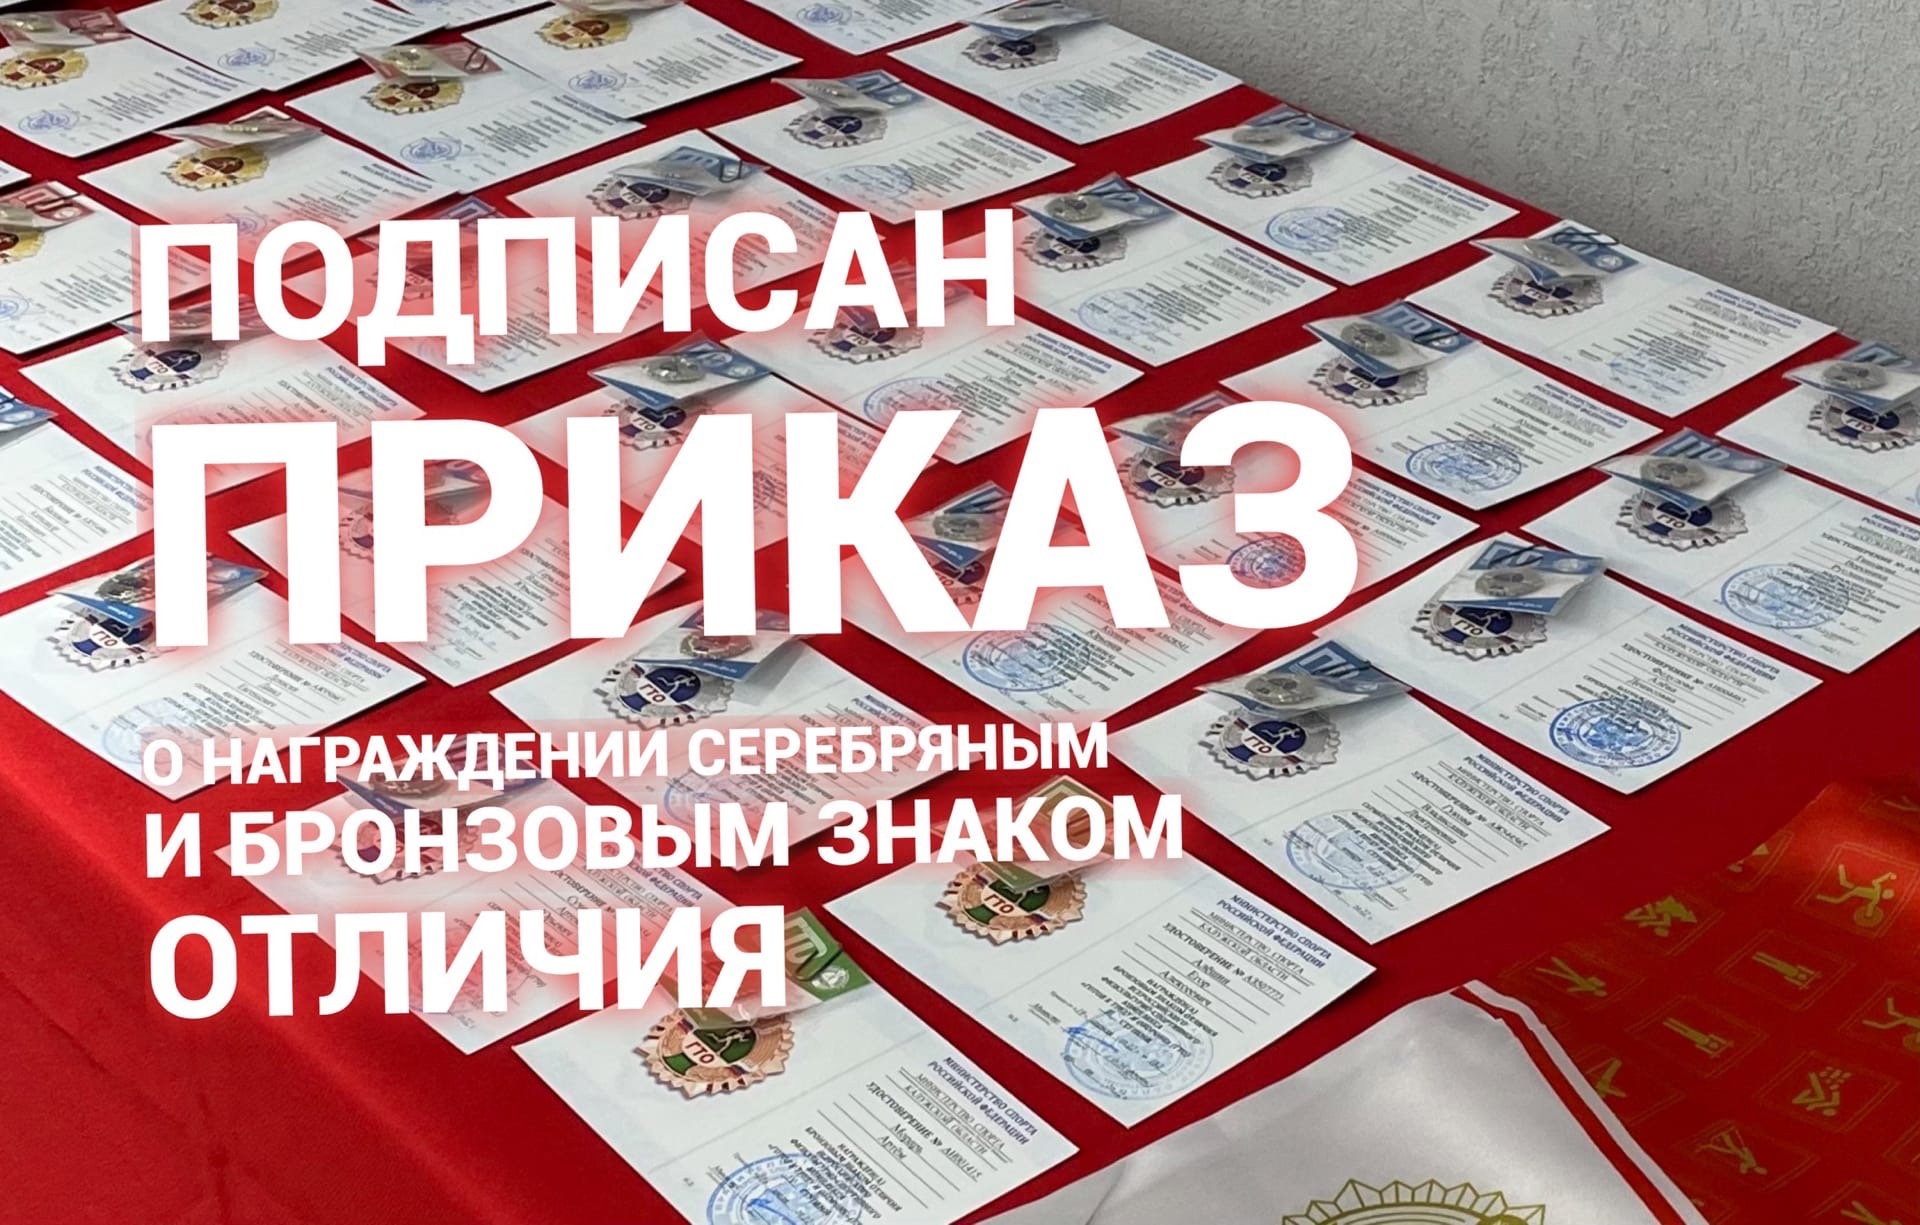 Приказ о награждении серебряным и бронзовым знаками отличия ГТО  за 3 квартал 2022 года подписан.